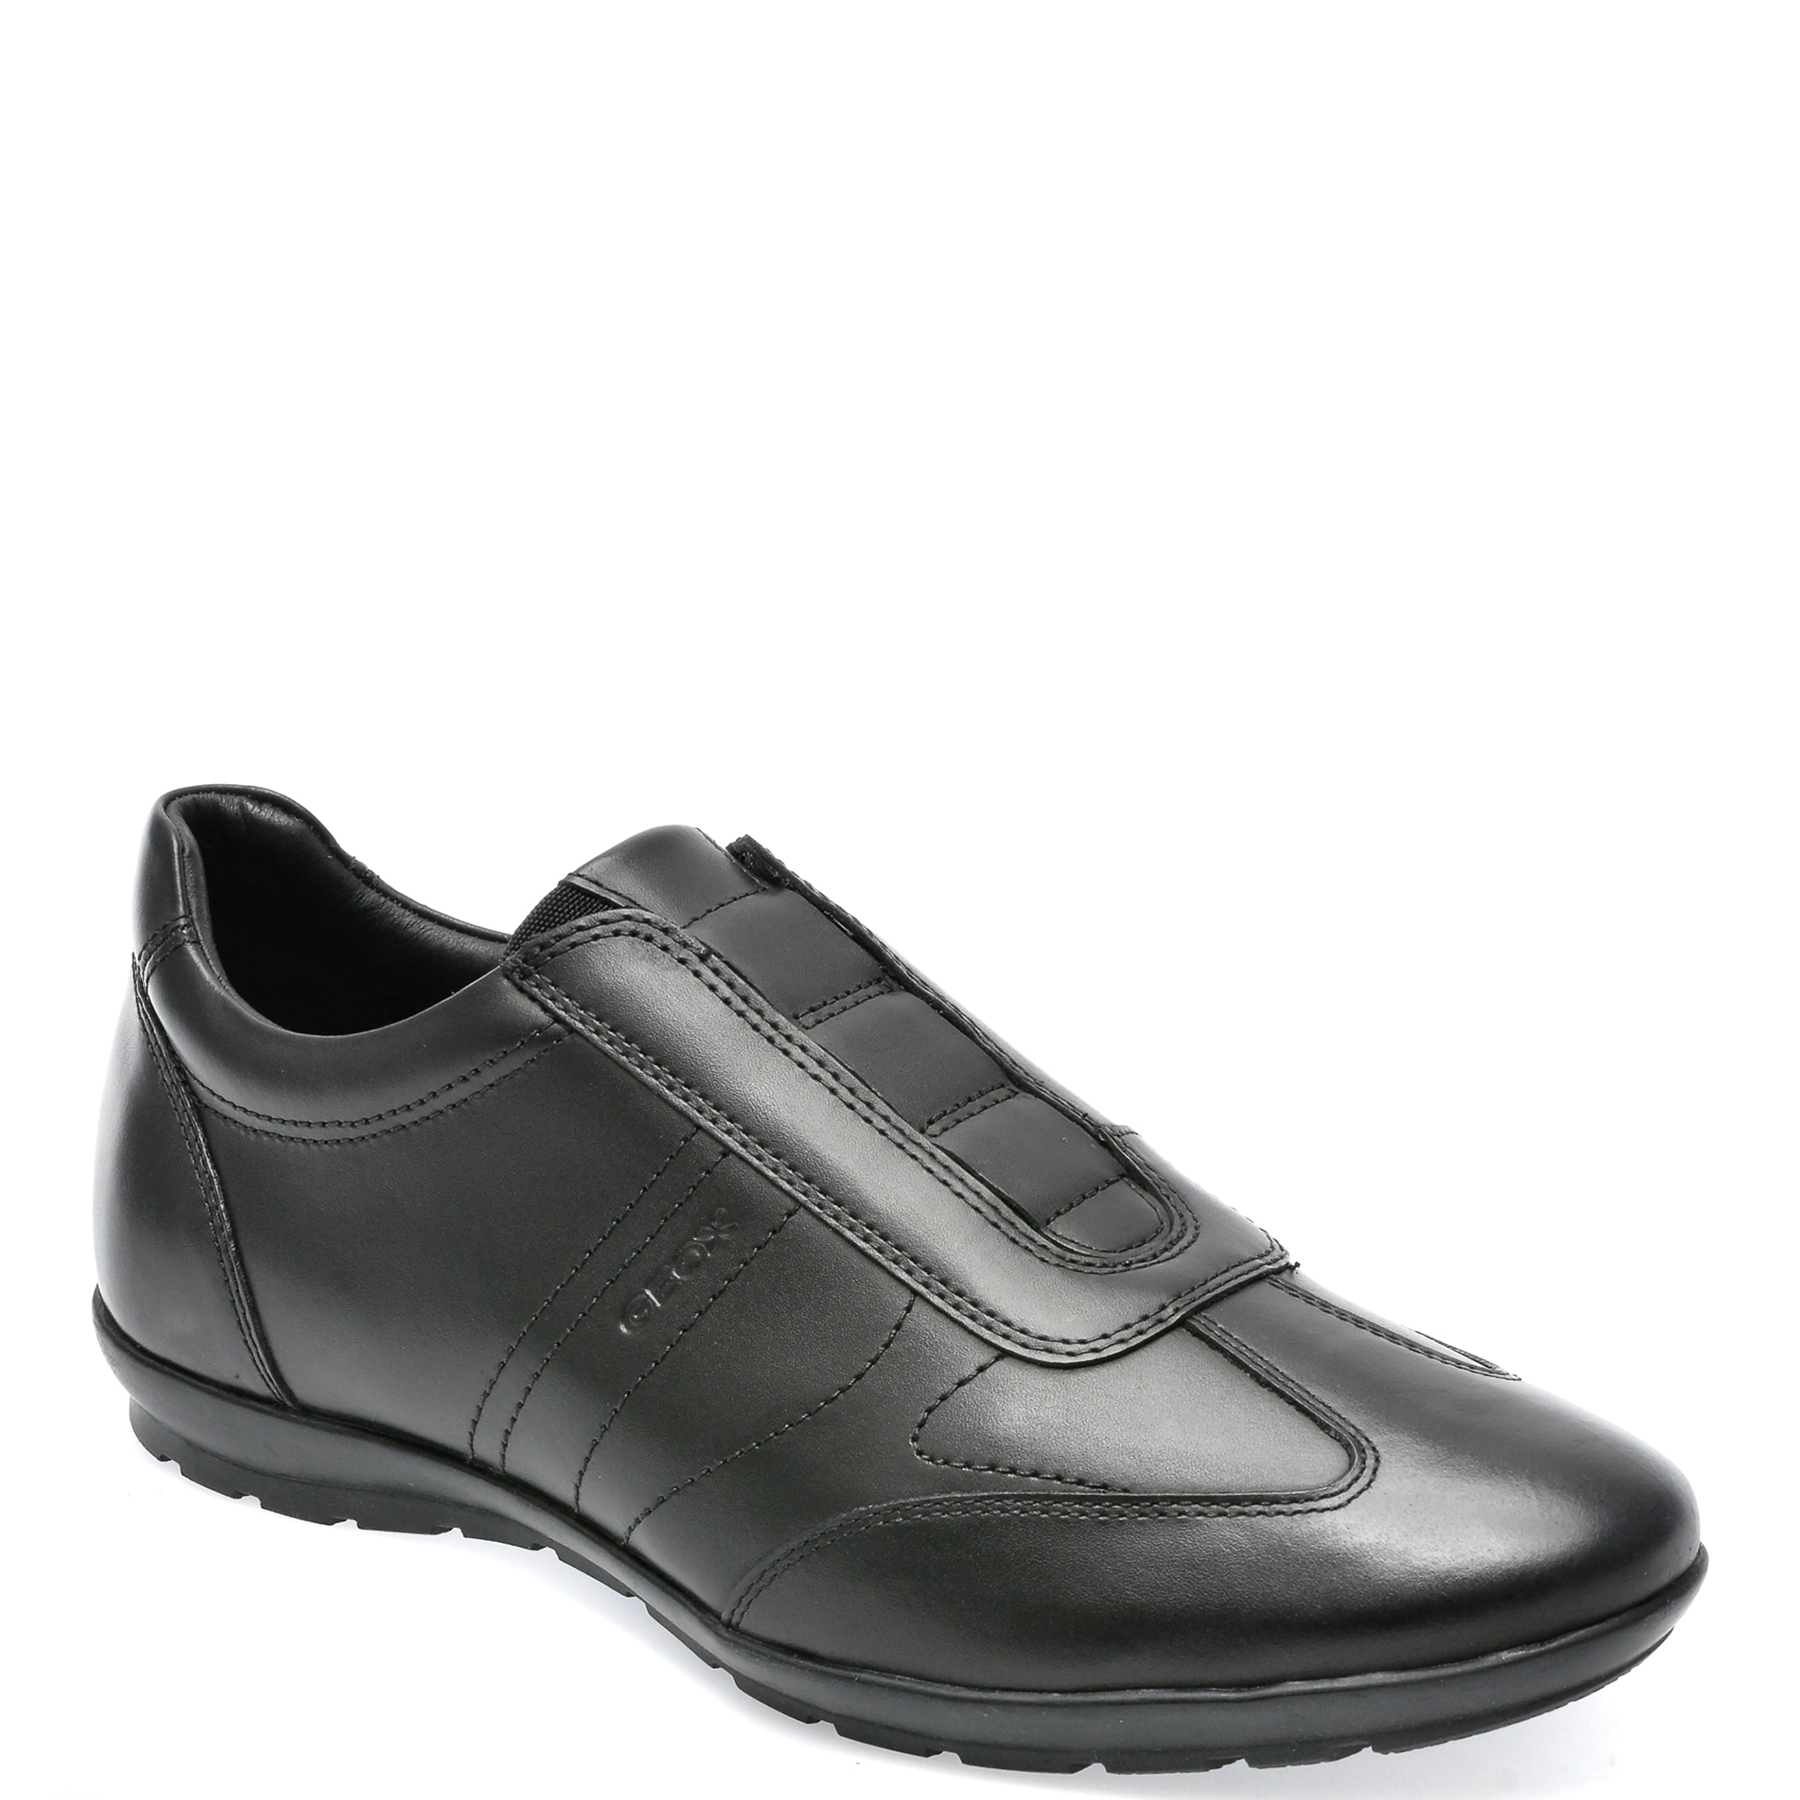 Pantofi GEOX negri, U74A5C, din piele naturala /barbati/pantofi